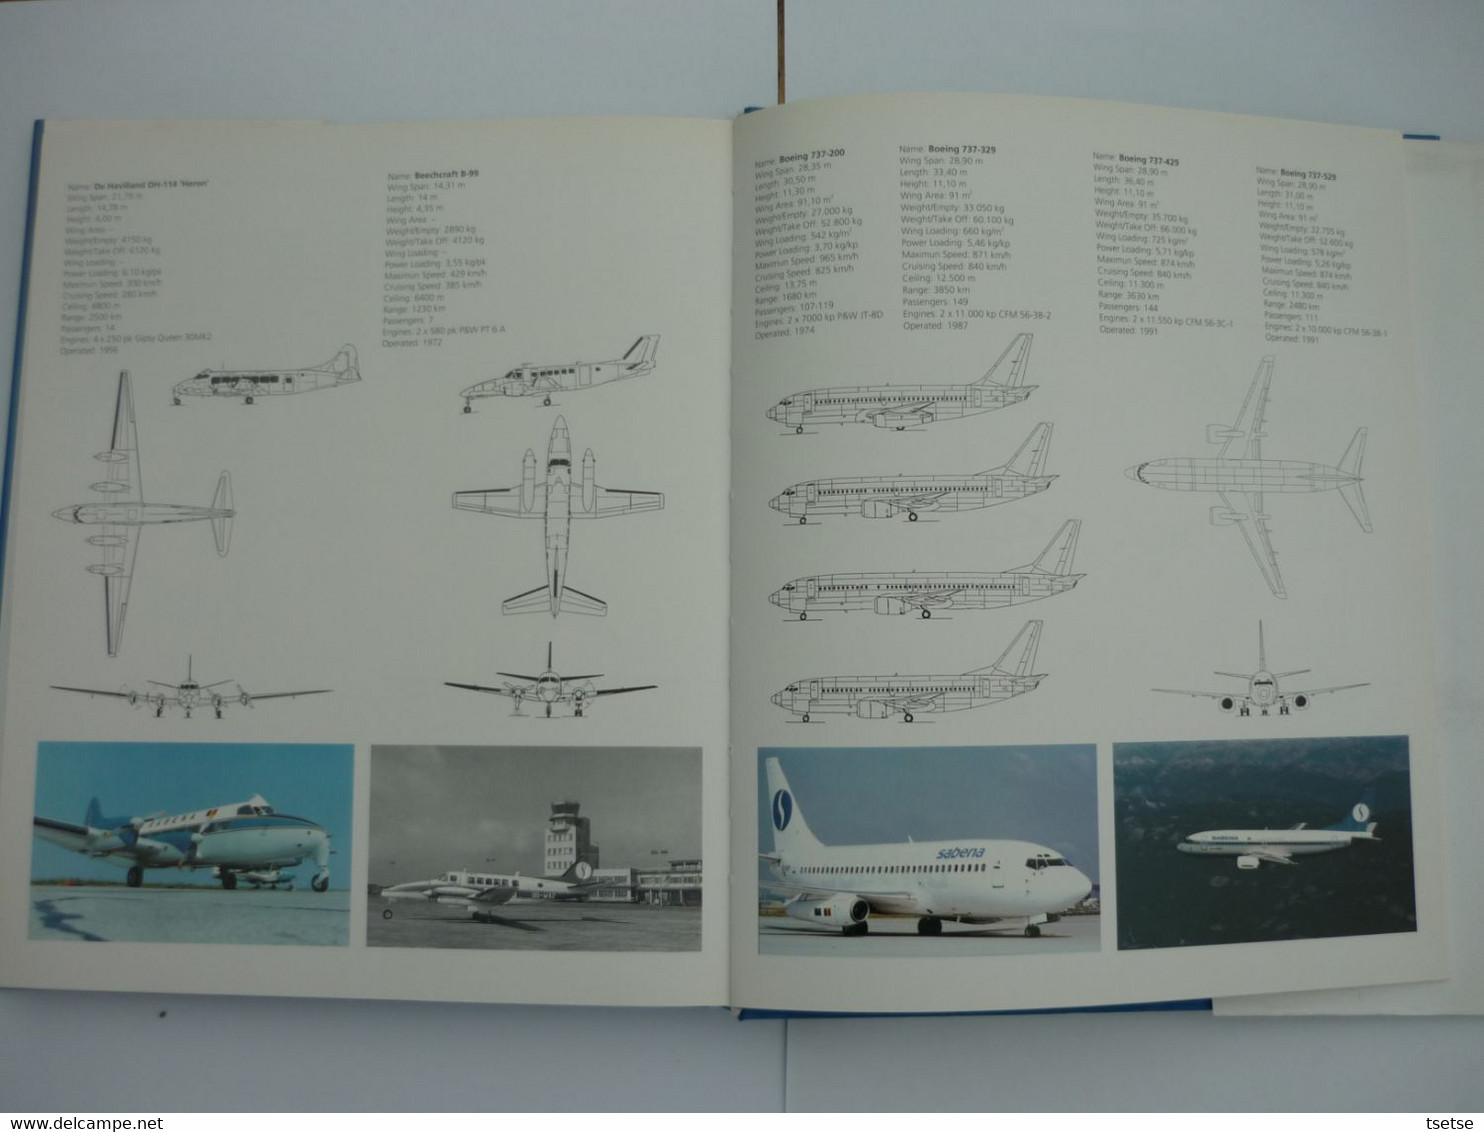 SABENA - 70 Jaar Luchtvaartpionier -1993 - Uitgeverij Lannoo/ Tielt - Werbung